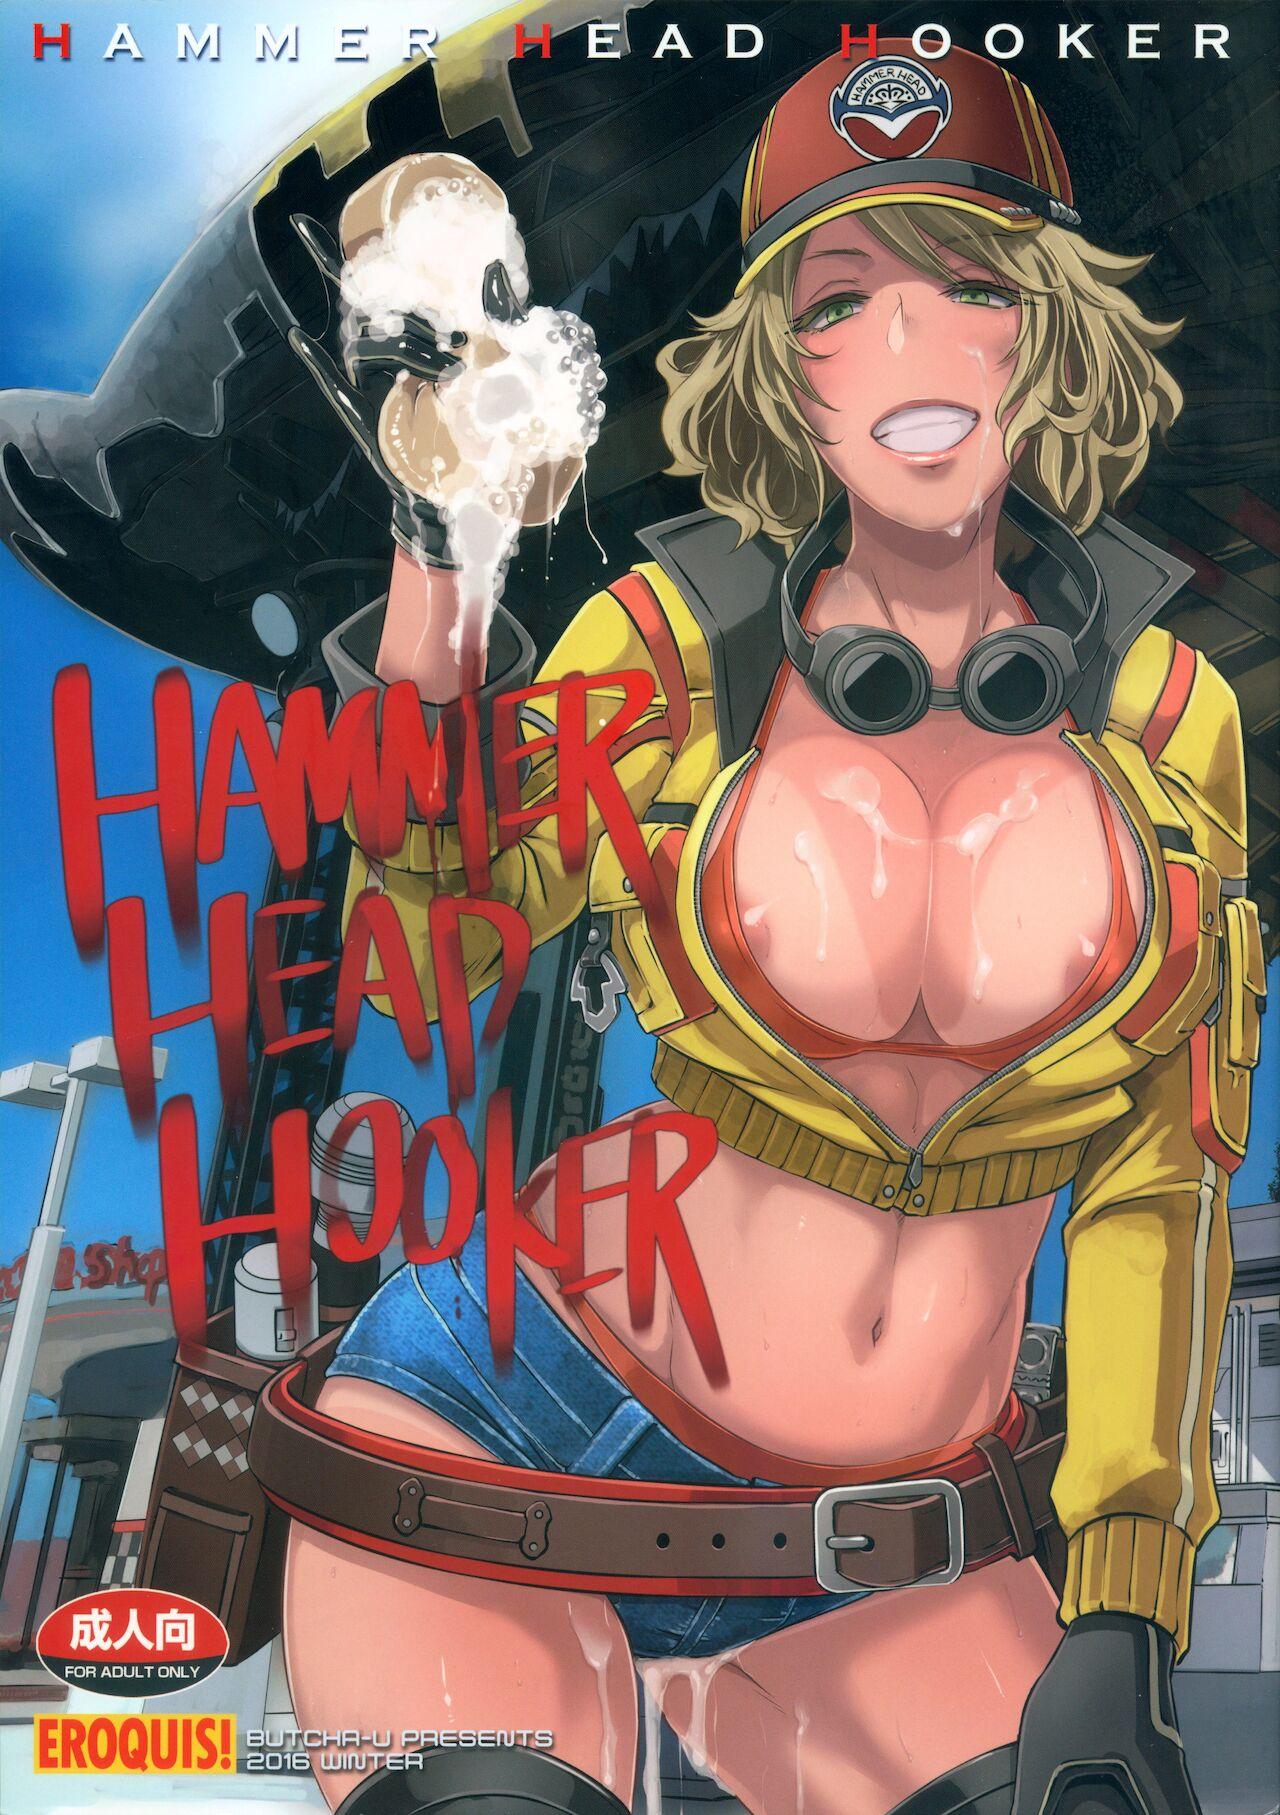 Hammer Head Hooker 0